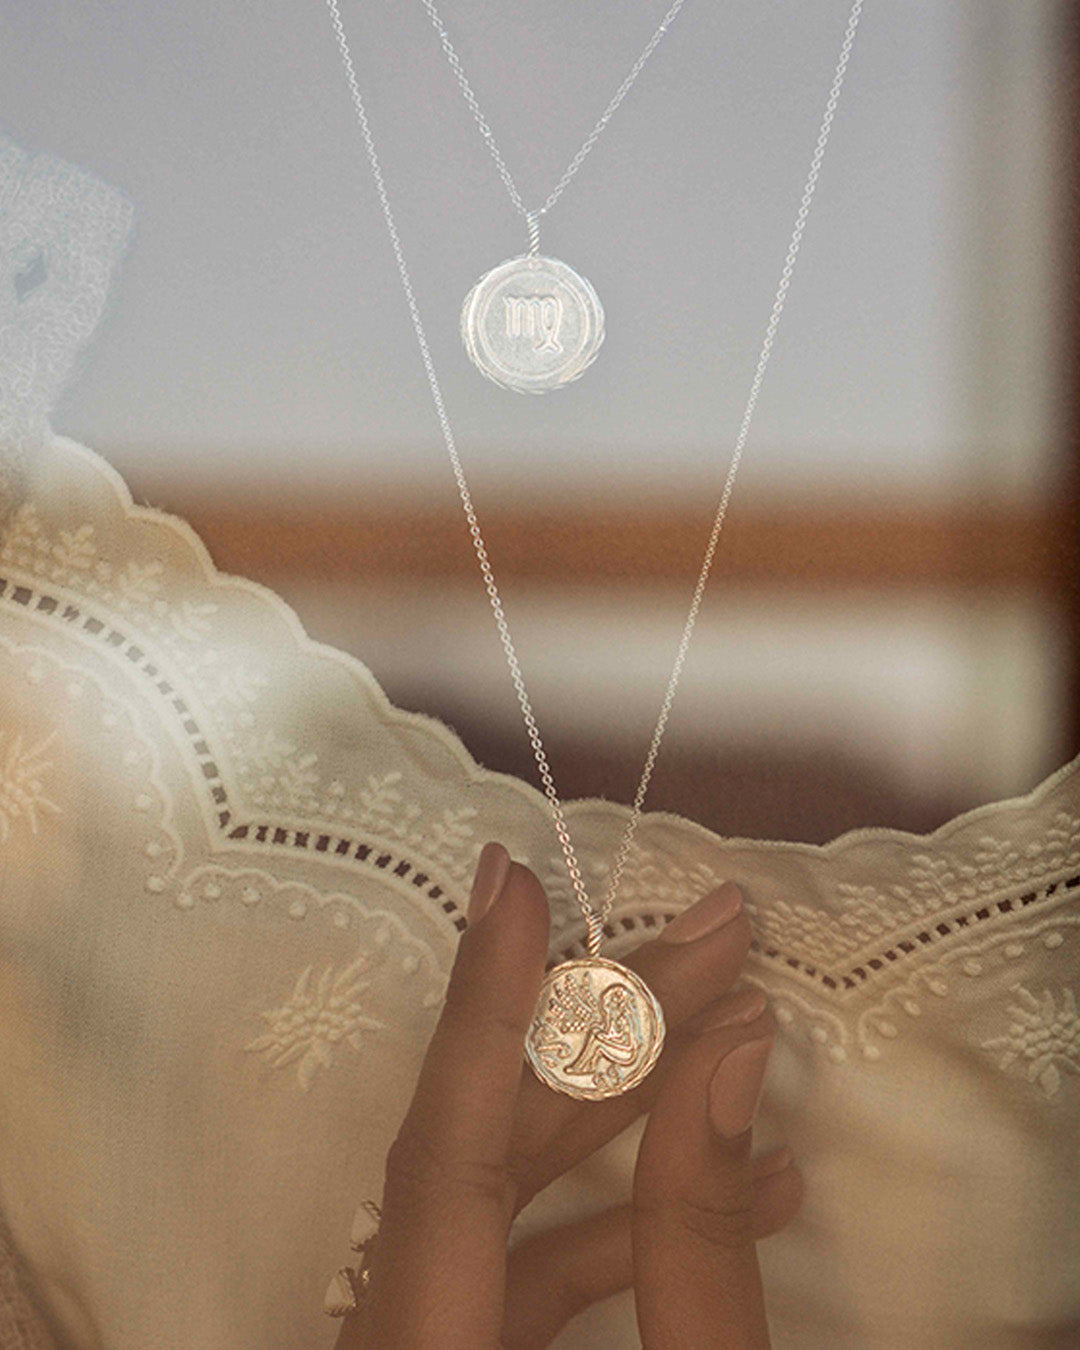 Association de colliers en argent massif 925 composée de 2 colliers fins avec une médaille au signe astrologique Vierge.